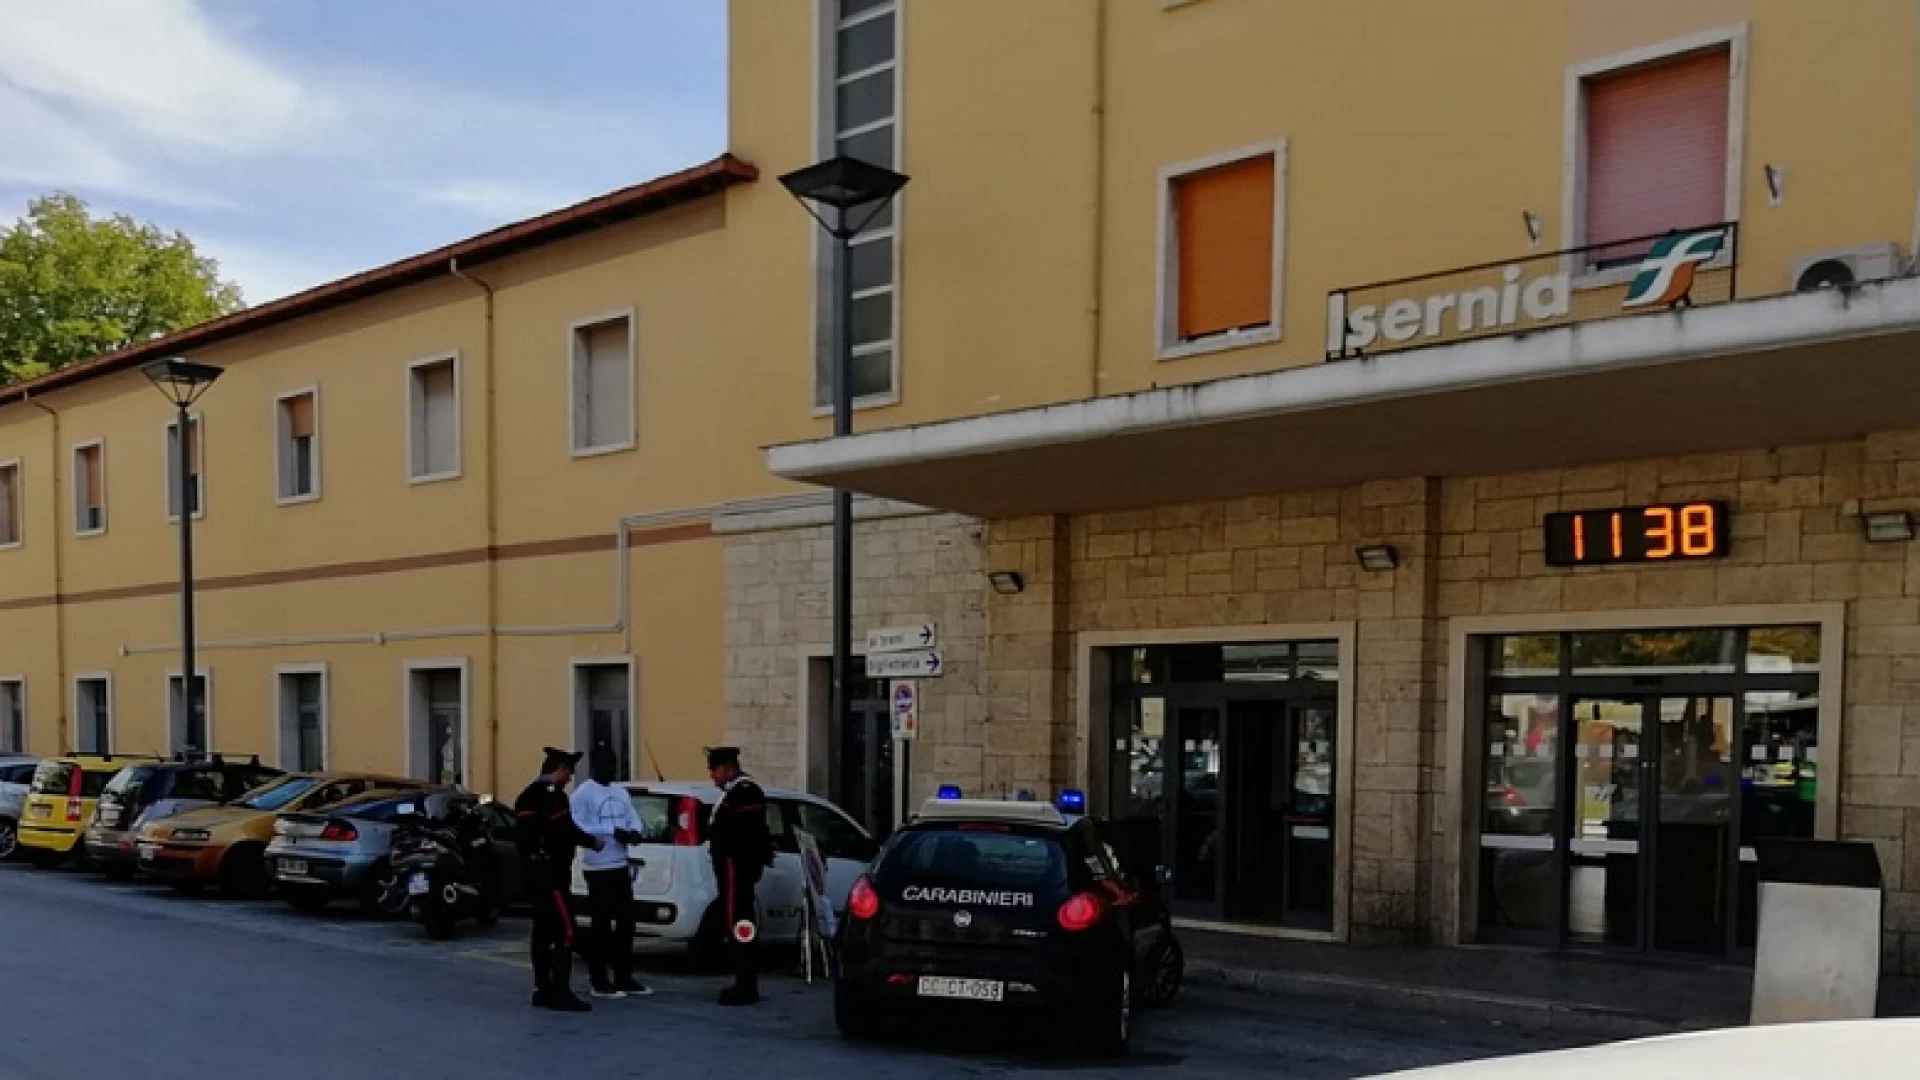 Isernia: I Carabinieri riportano alla calma due stranieri, ospiti di due diversi centri di accoglienza, che litigavano per un telefonino.